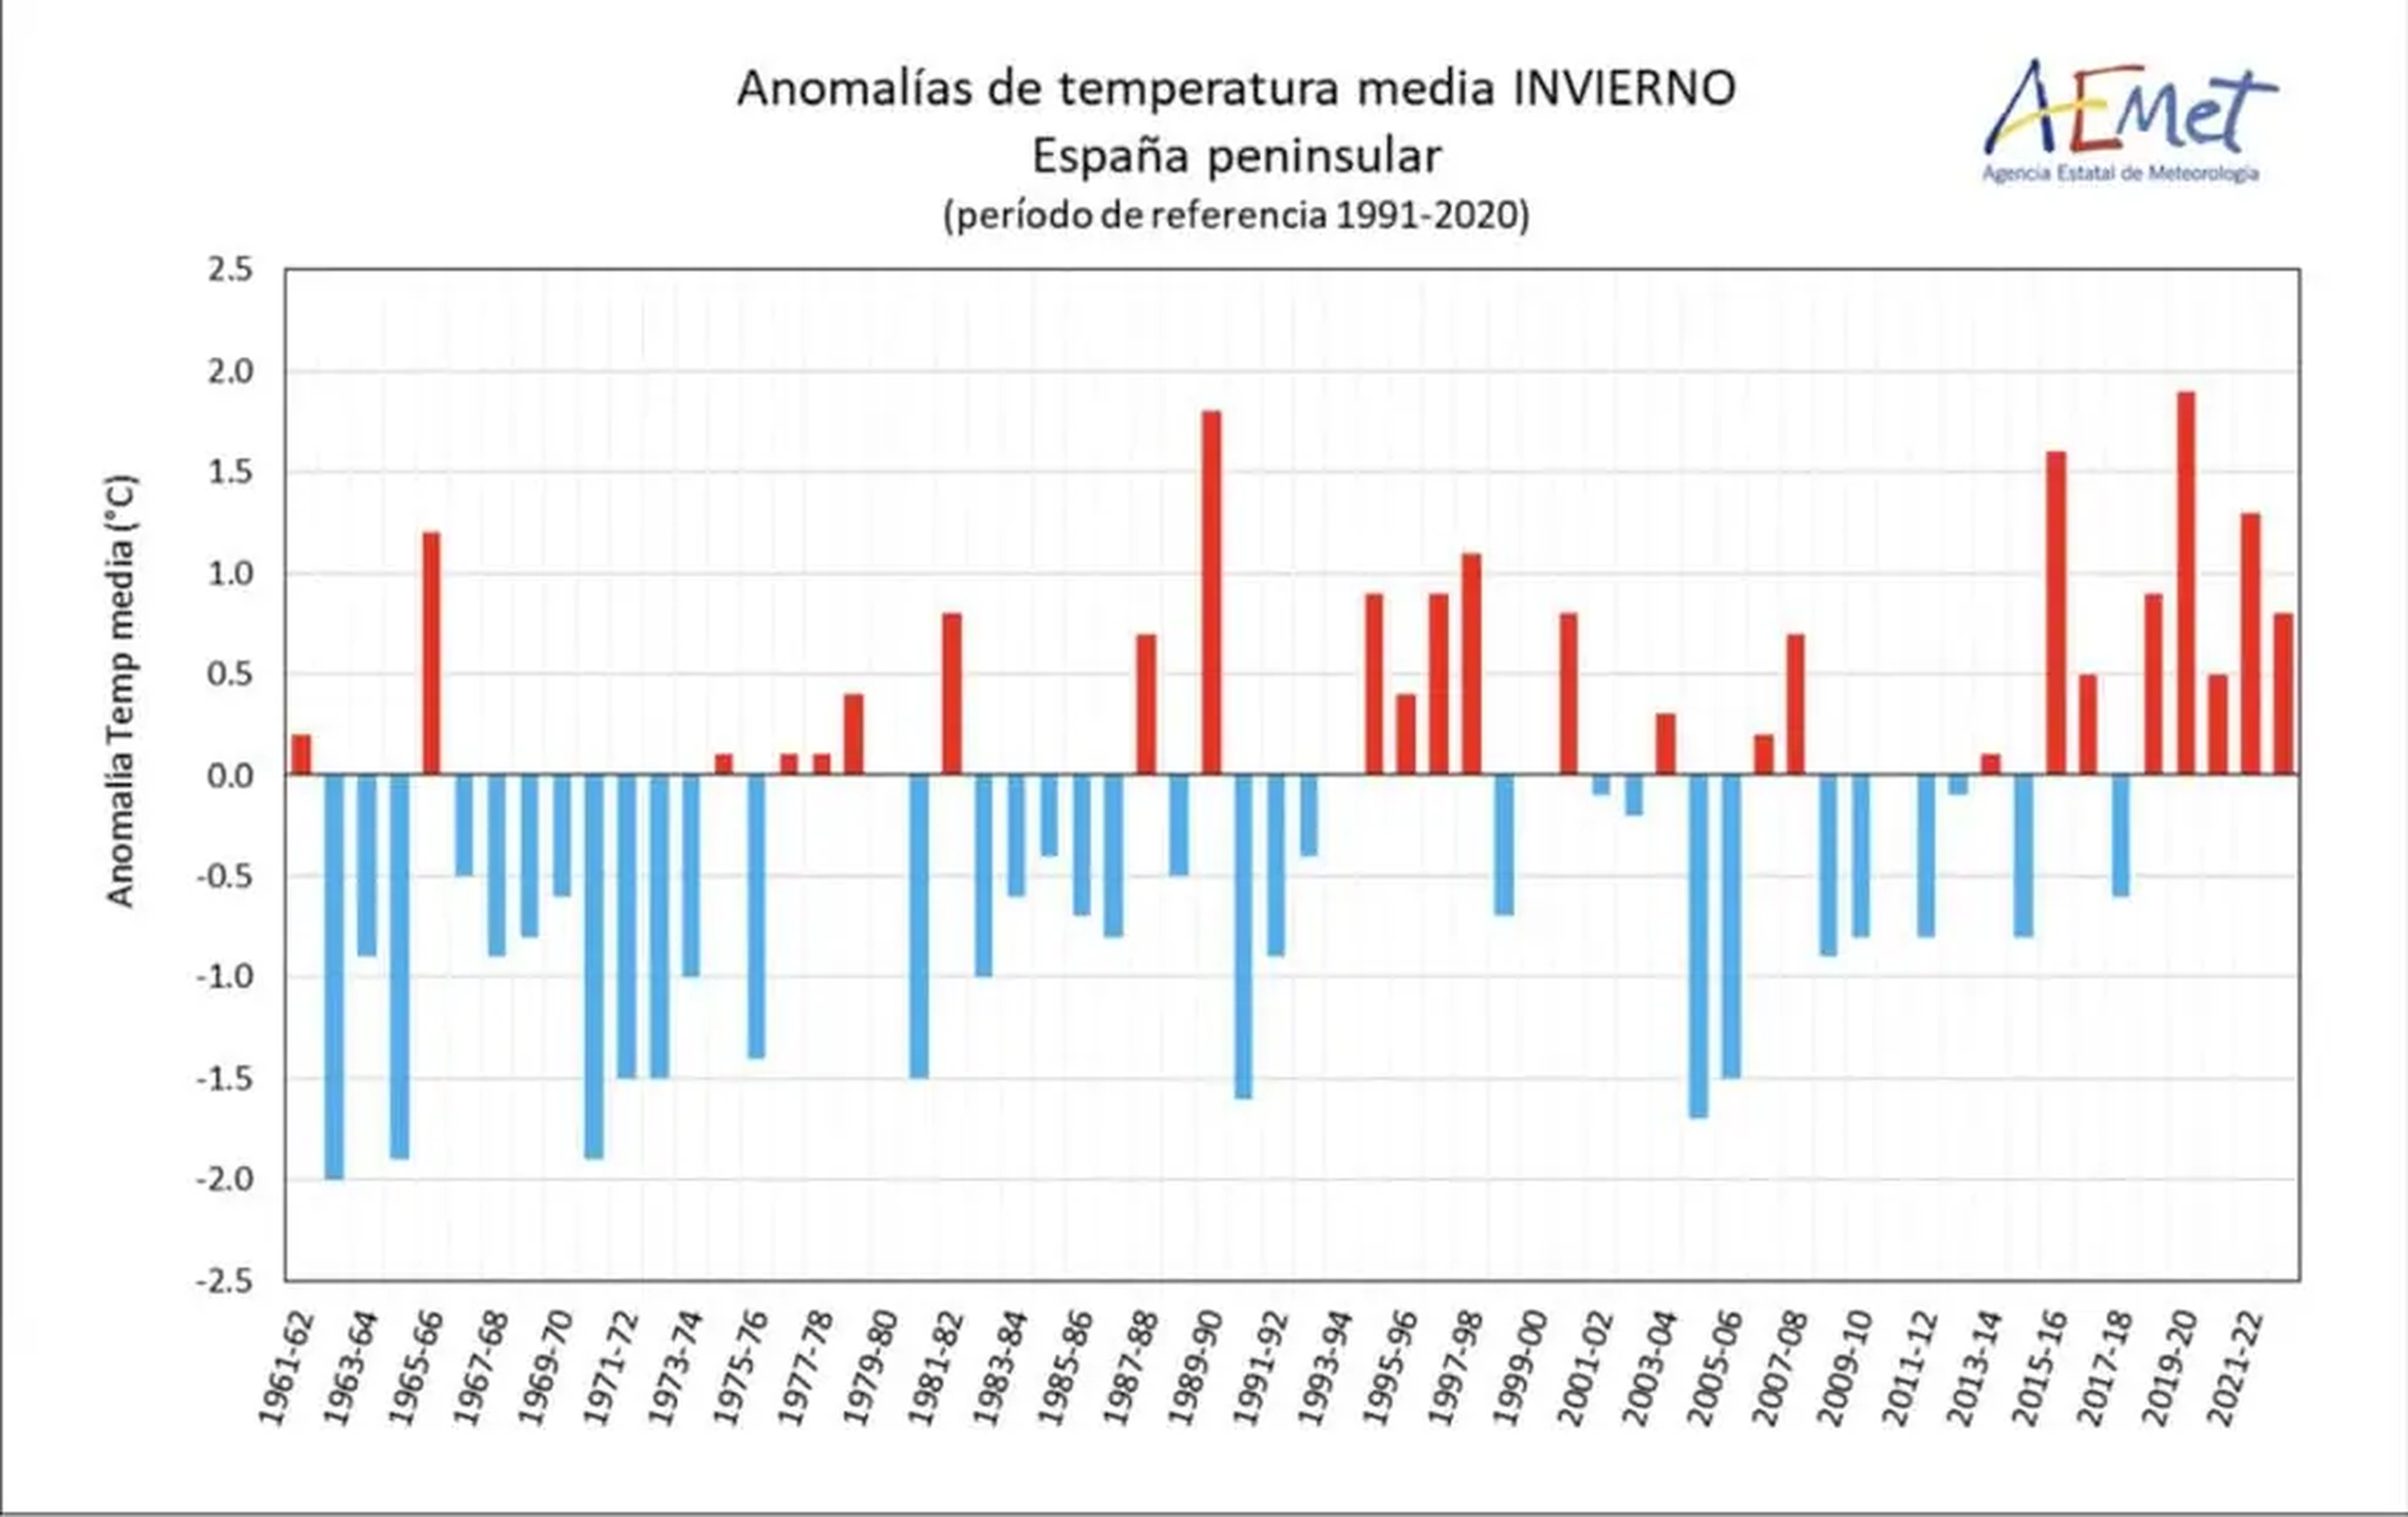 Anomalías de temperatura media del invierno en España peninsular.